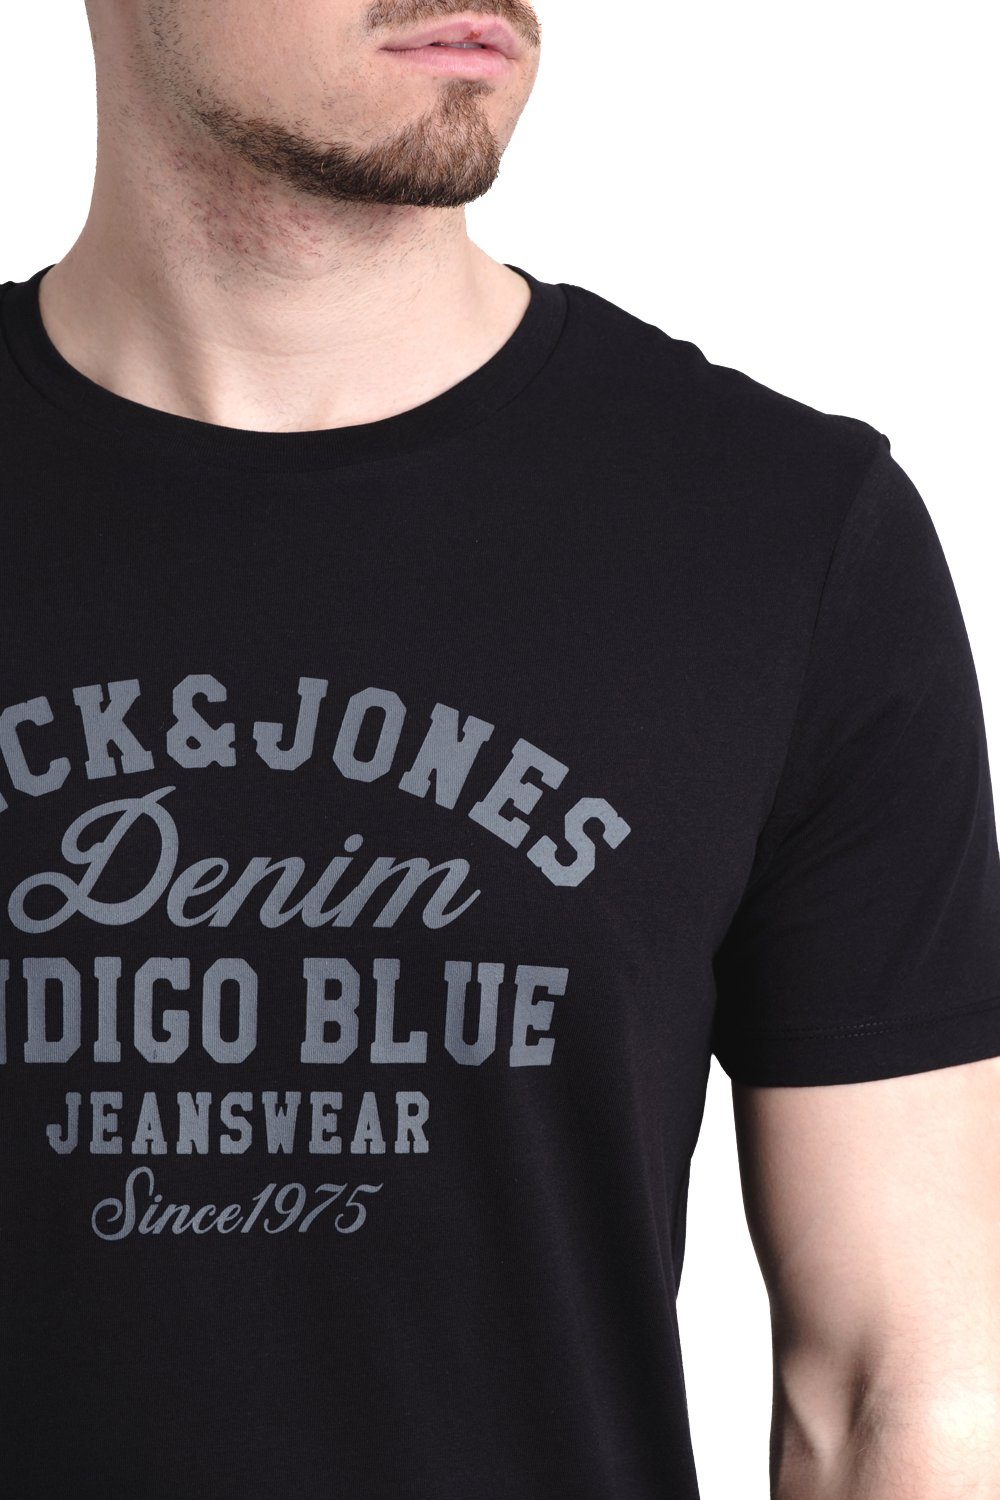 OPT & Print-Shirt mit T-Shirt Baumwolle Jack aus 3 Aufdruck Jones